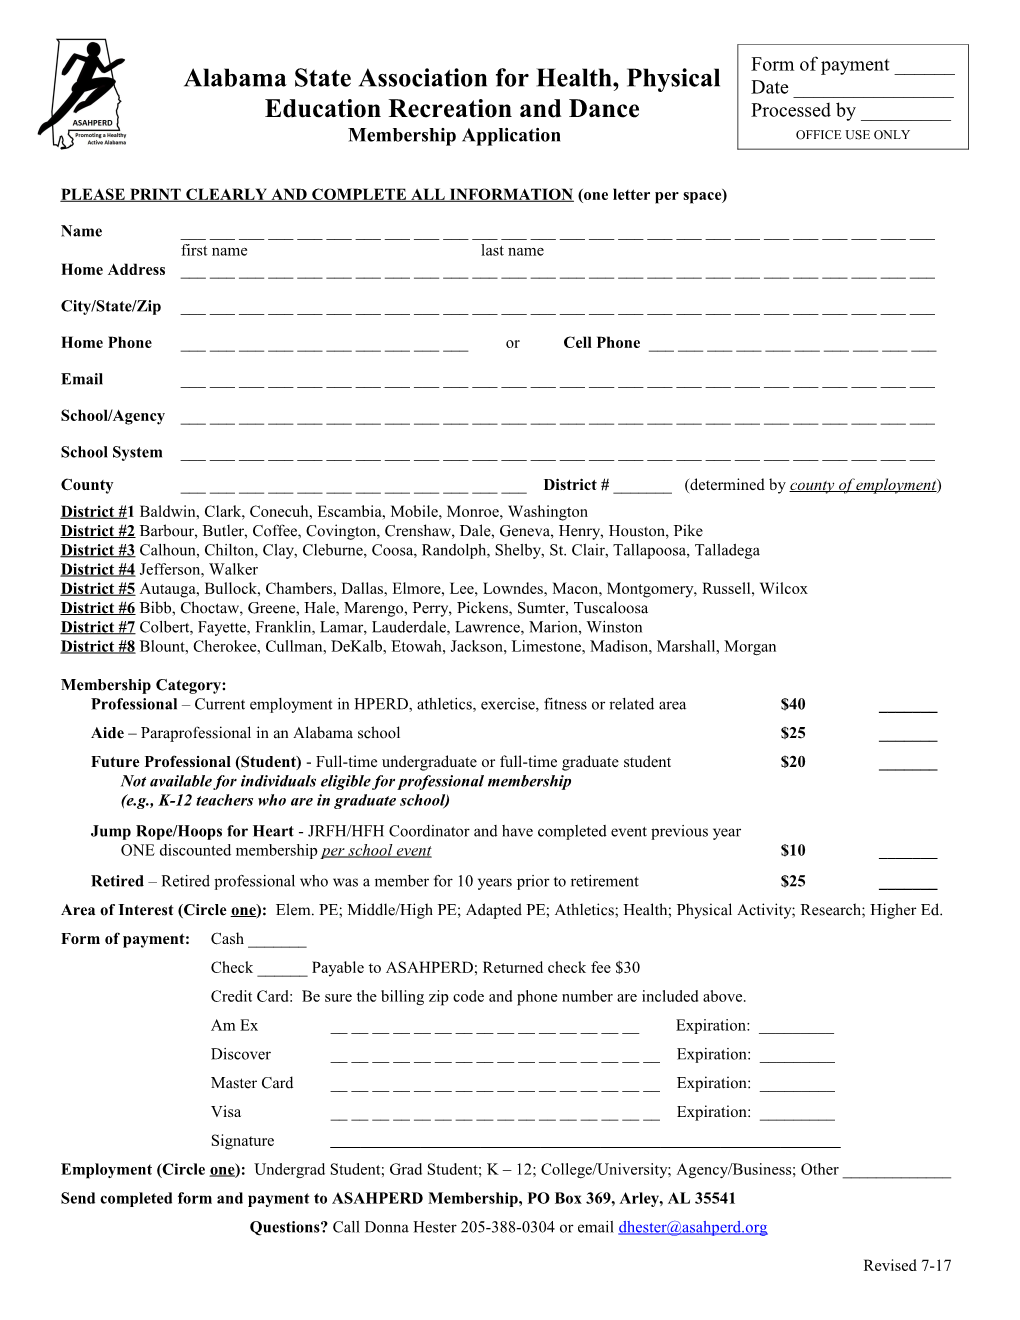 Asahperd Membership Application